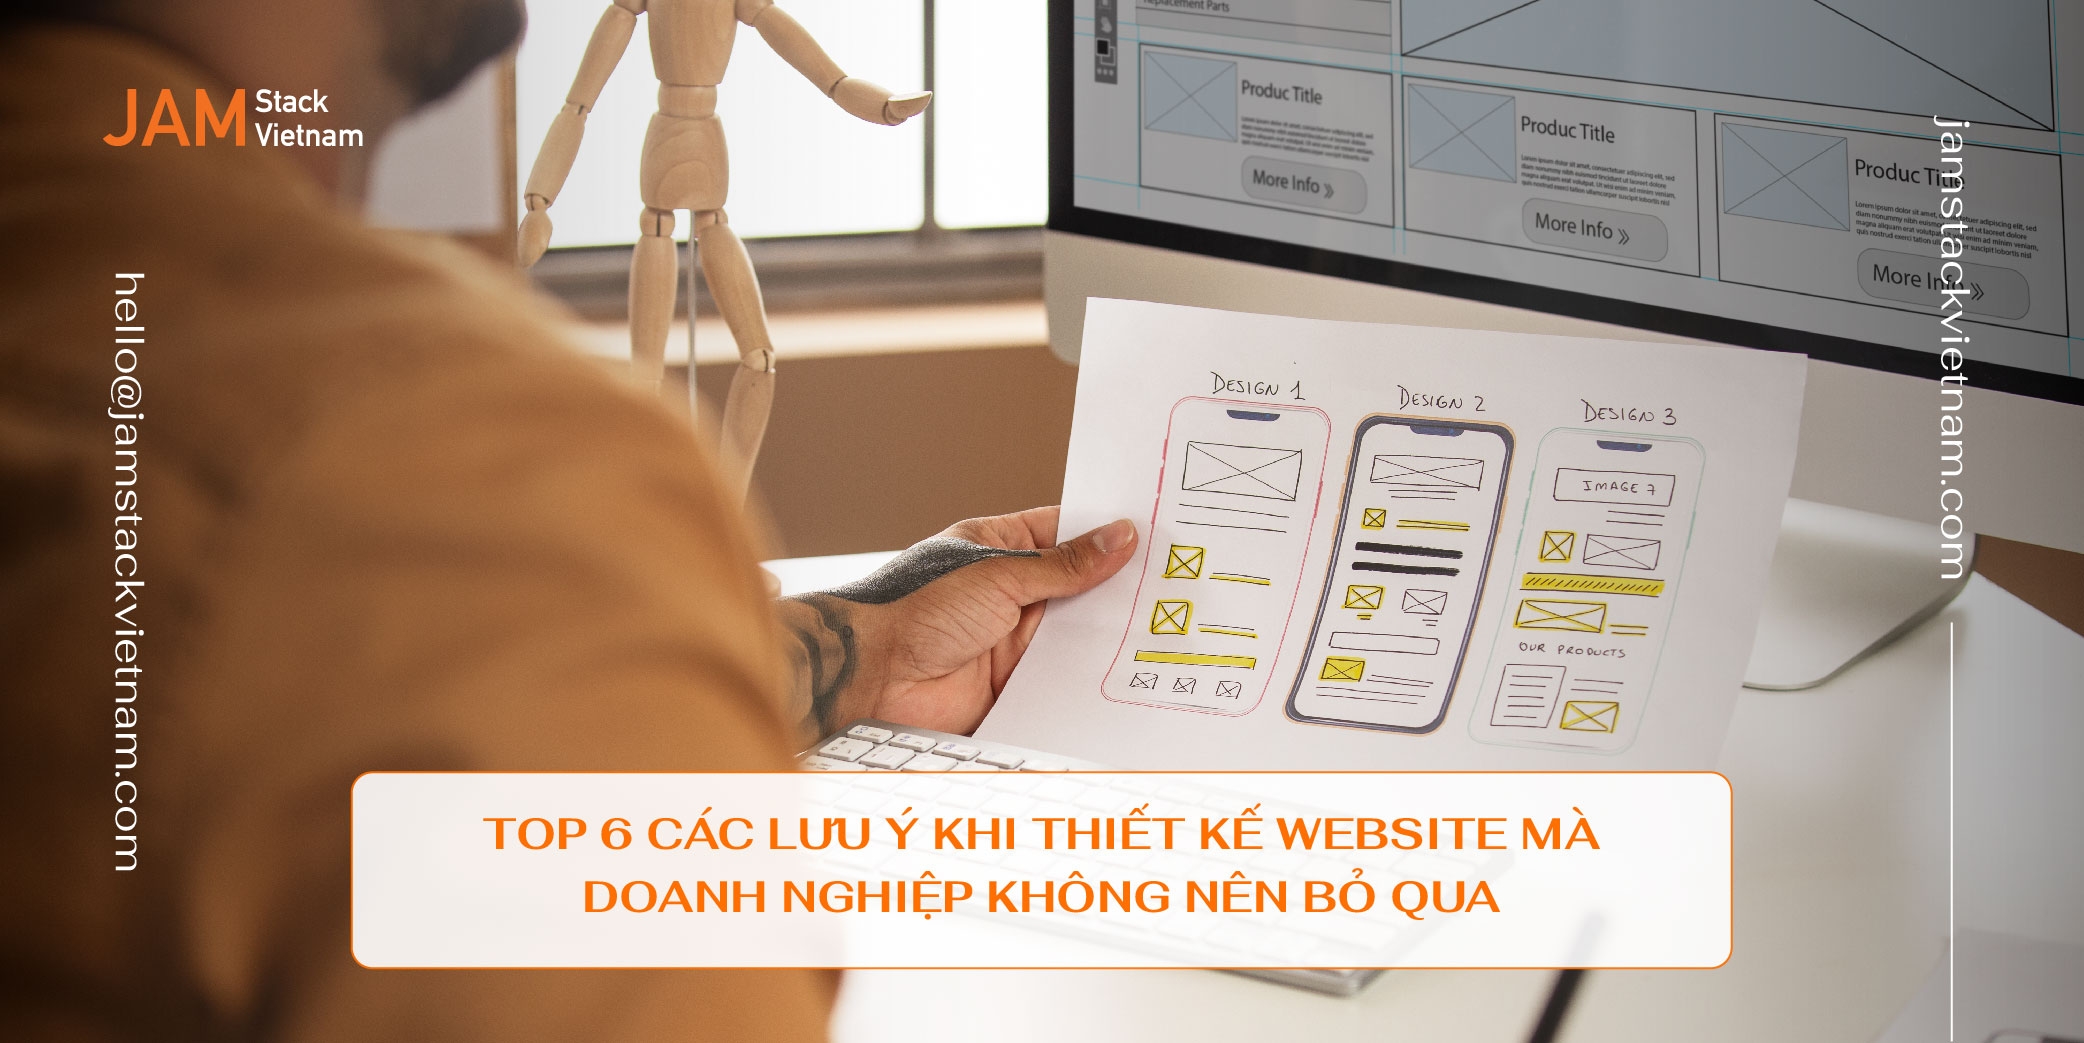 Top 6 các lưu ý khi thiết kế website mà doanh nghiệp không nên bỏ qua